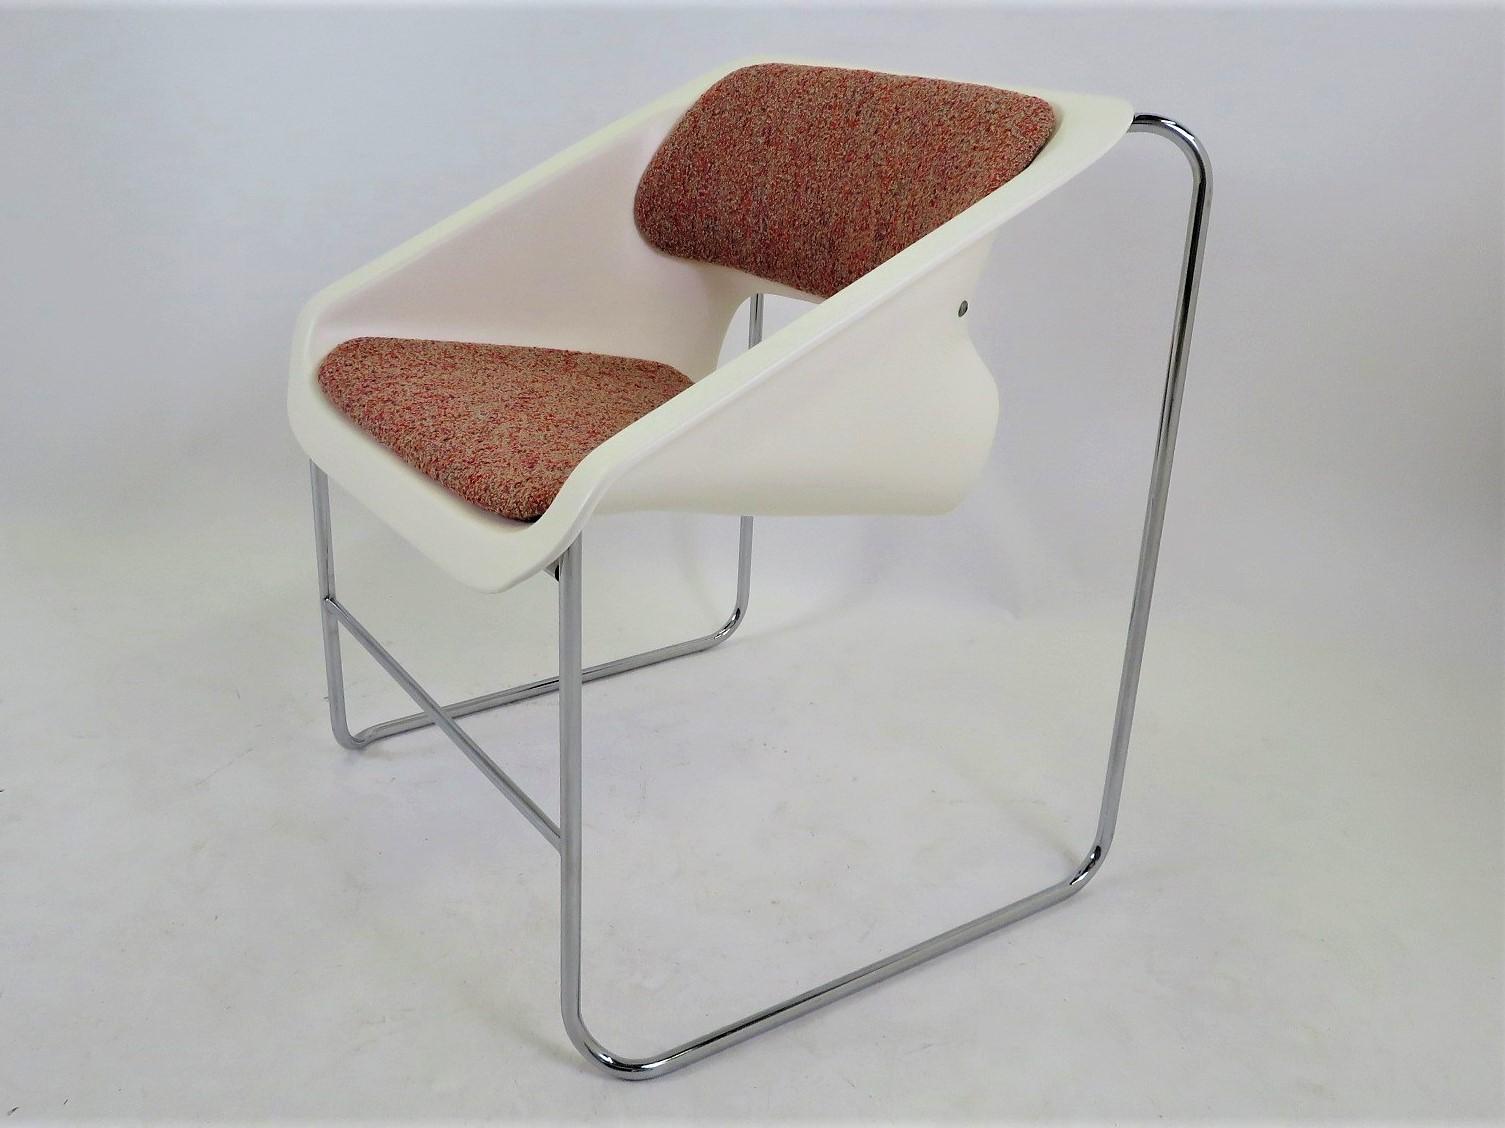 Fauteuil Space Age Modern créé par Paul Boulva pour les Olympiques de Montréal en 1976 et produit par Artopex au Canada. La chaise est constituée d'une structure en métal chromé et d'un siège en plastique moulé avec dossier et assise rembourrés. La